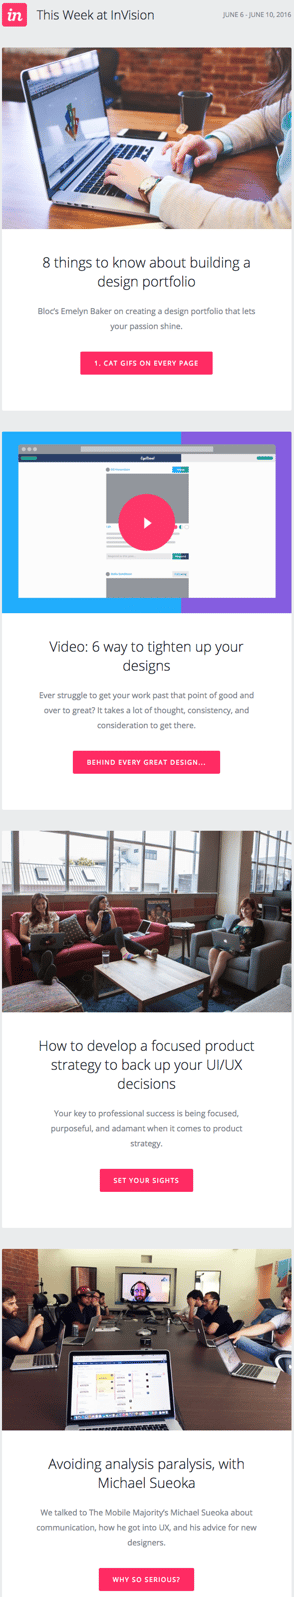 e-Mail newsletter exemplo de design com posts por InVision